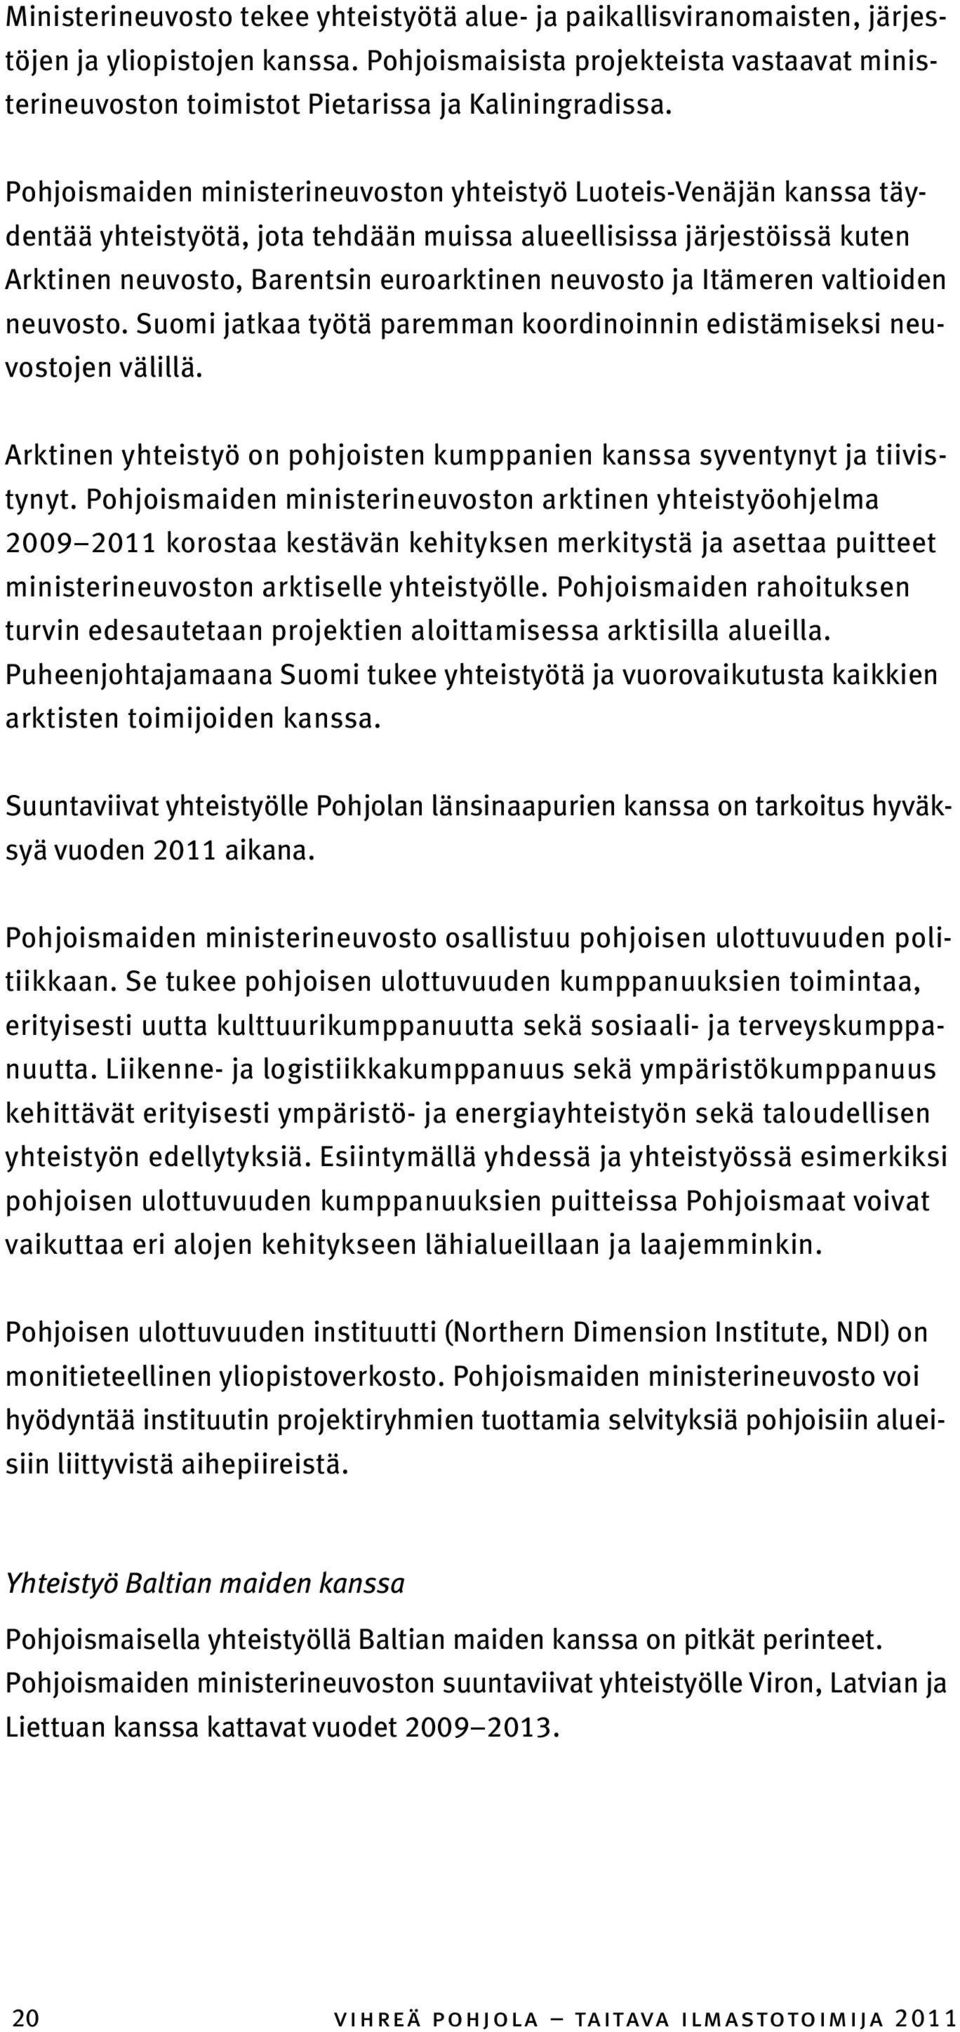 Pohjoismaiden ministerineuvoston yhteistyö Luoteis-Venäjän kanssa täydentää yhteistyötä, jota tehdään muissa alueellisissa järjestöissä kuten Arktinen neuvosto, Barentsin euroarktinen neuvosto ja